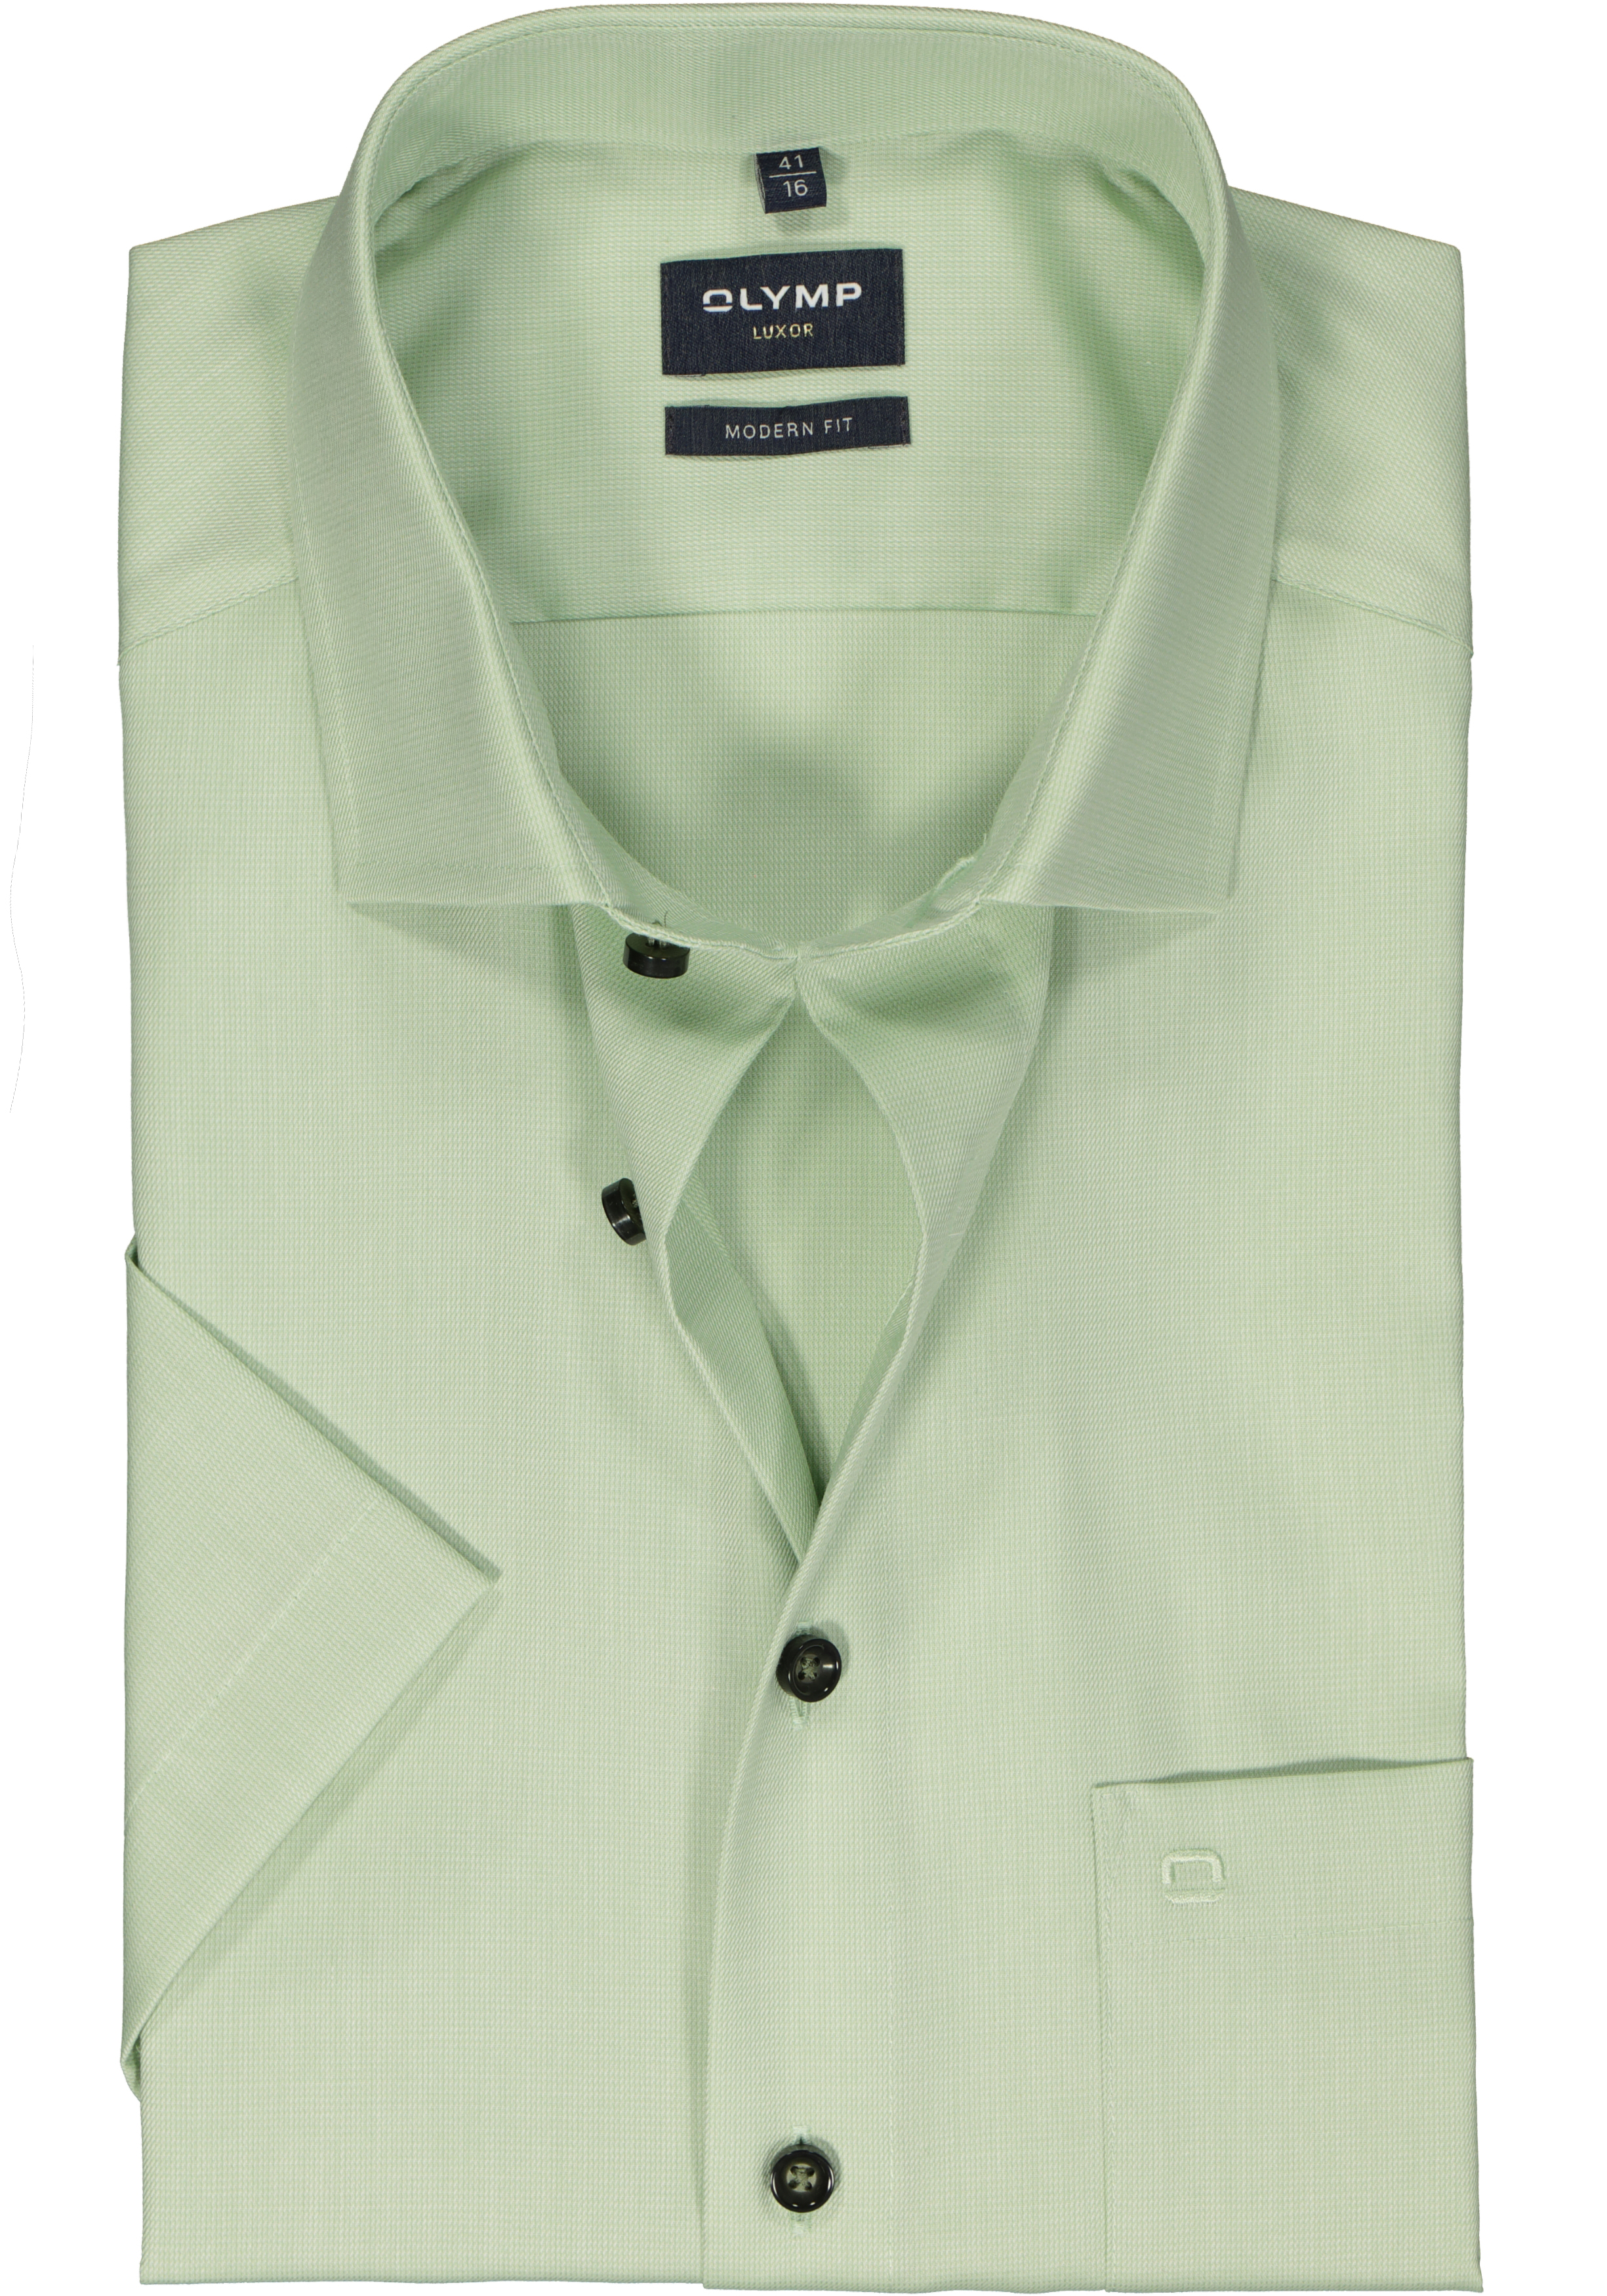 OLYMP modern fit overhemd, korte mouw, structuur, groen